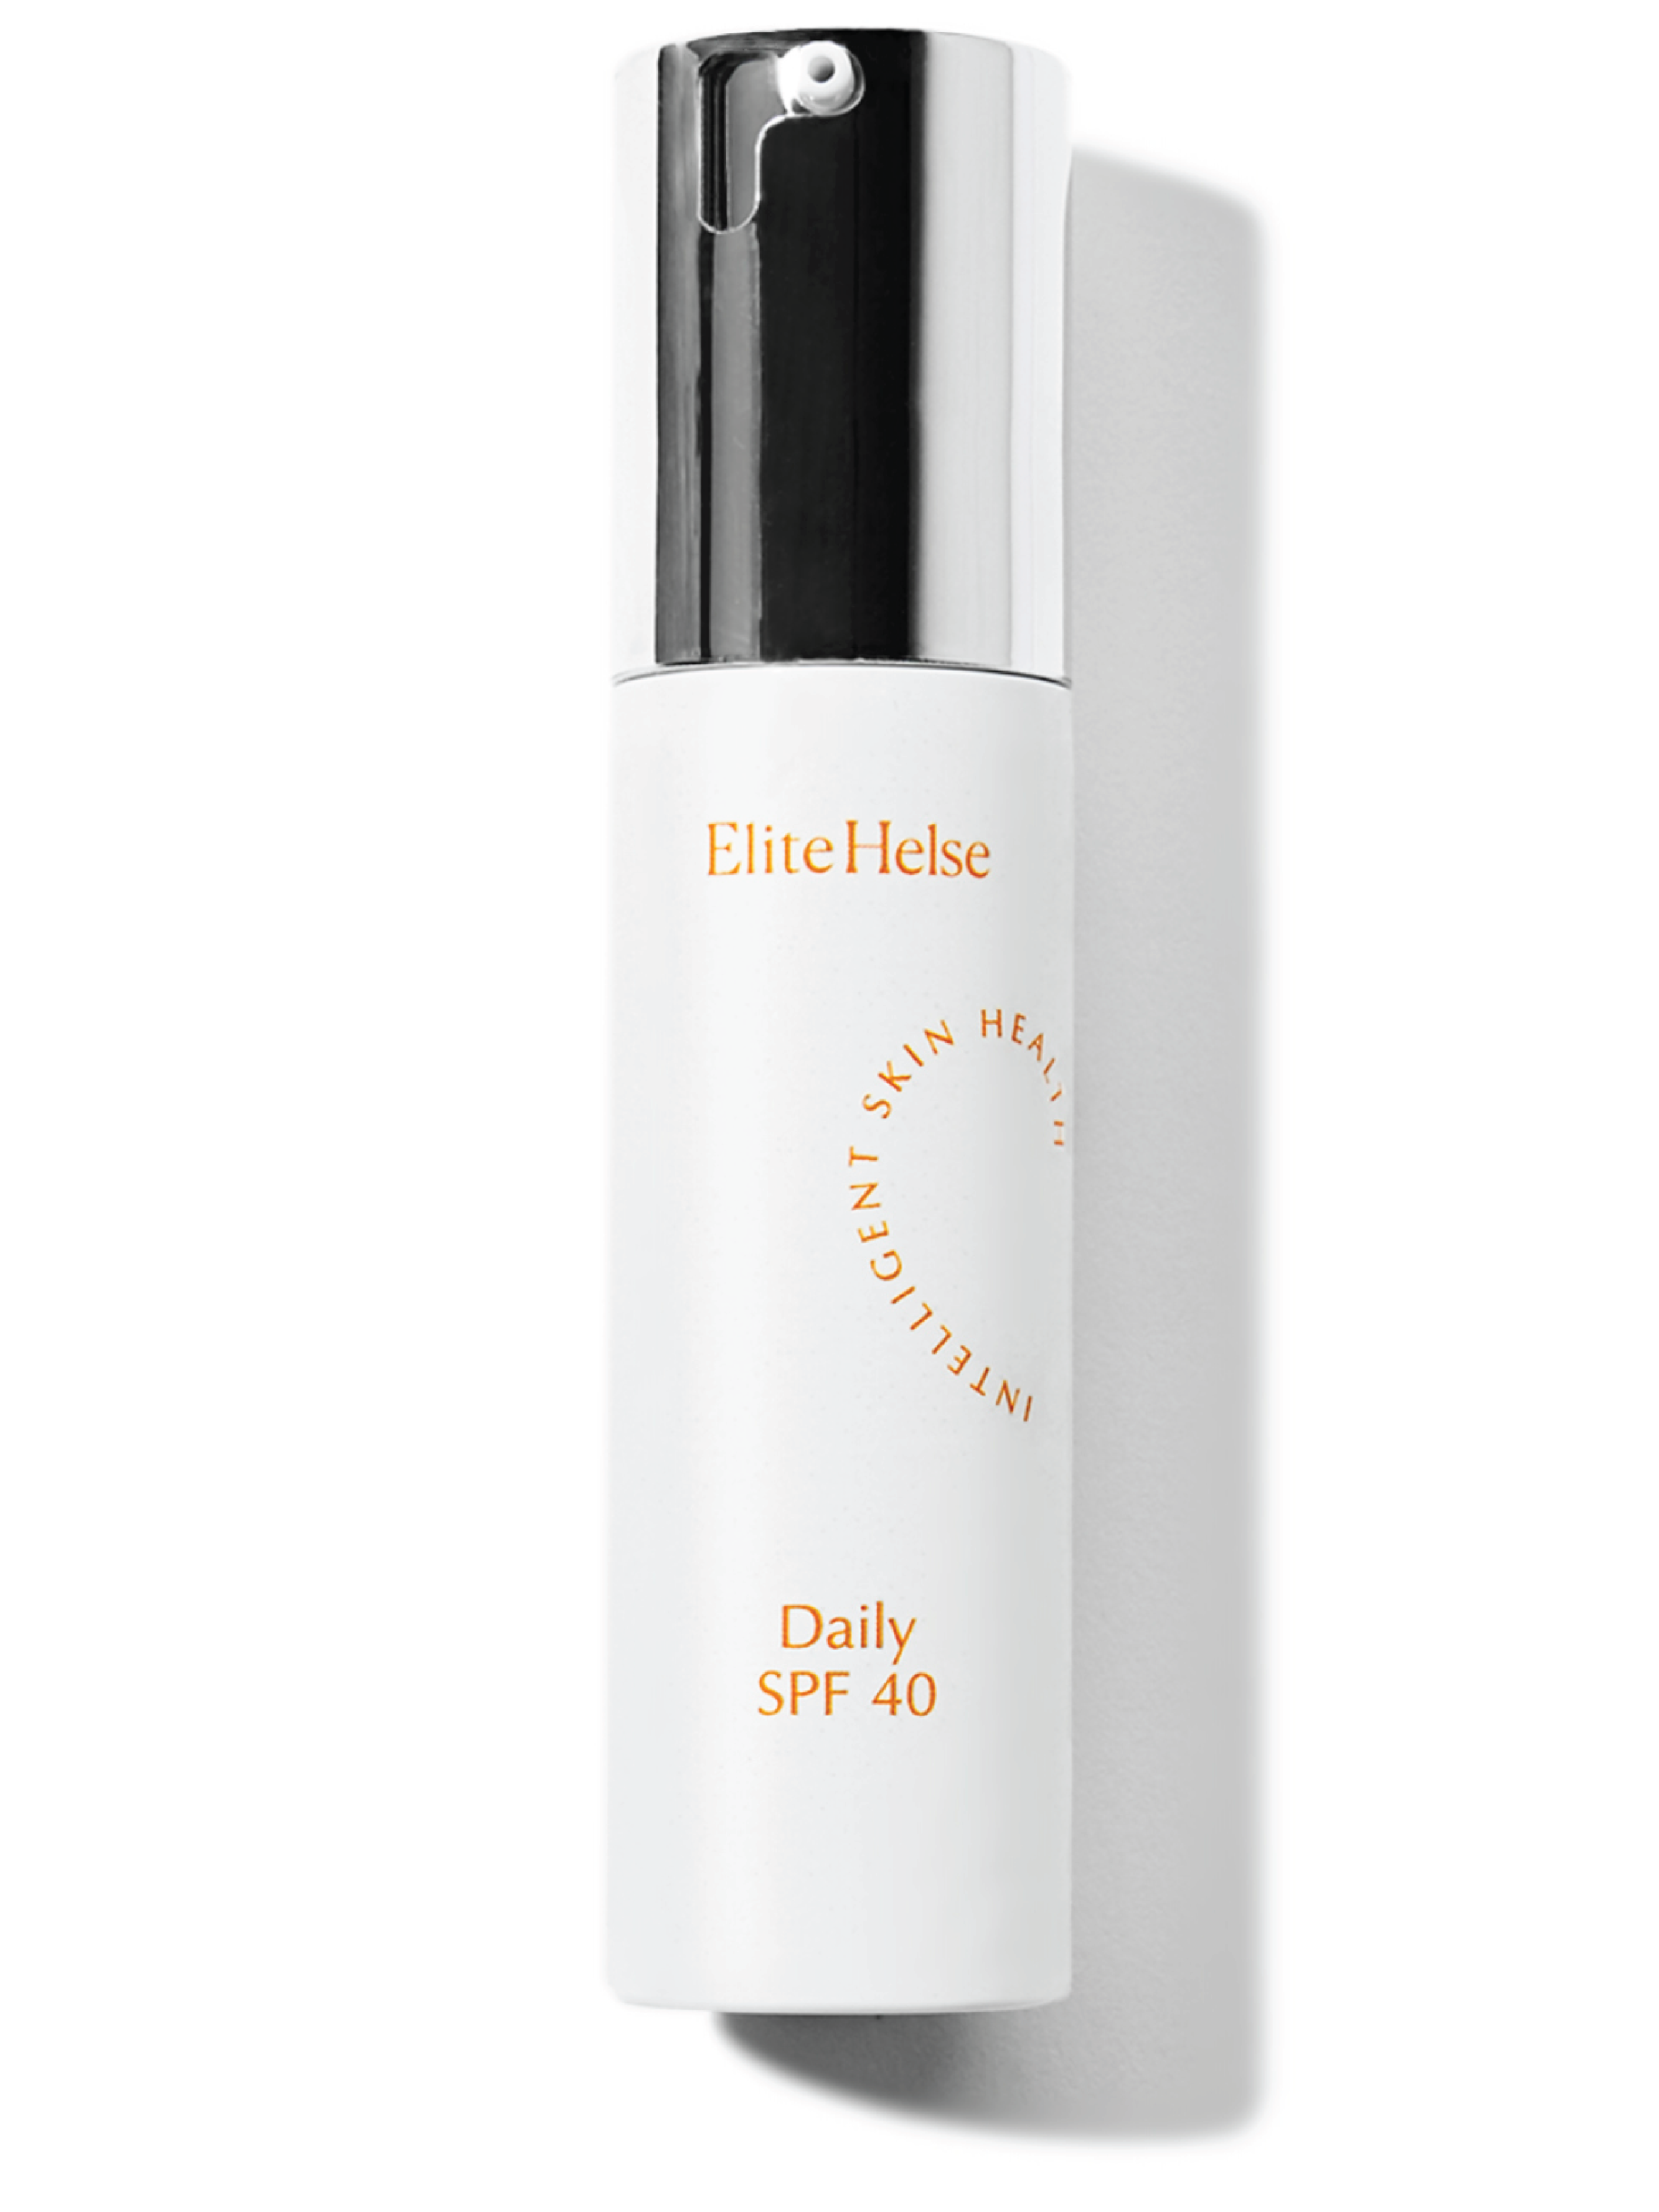 Elite Helse Intelligent Skin Health Daily SPF 40, 50 ml